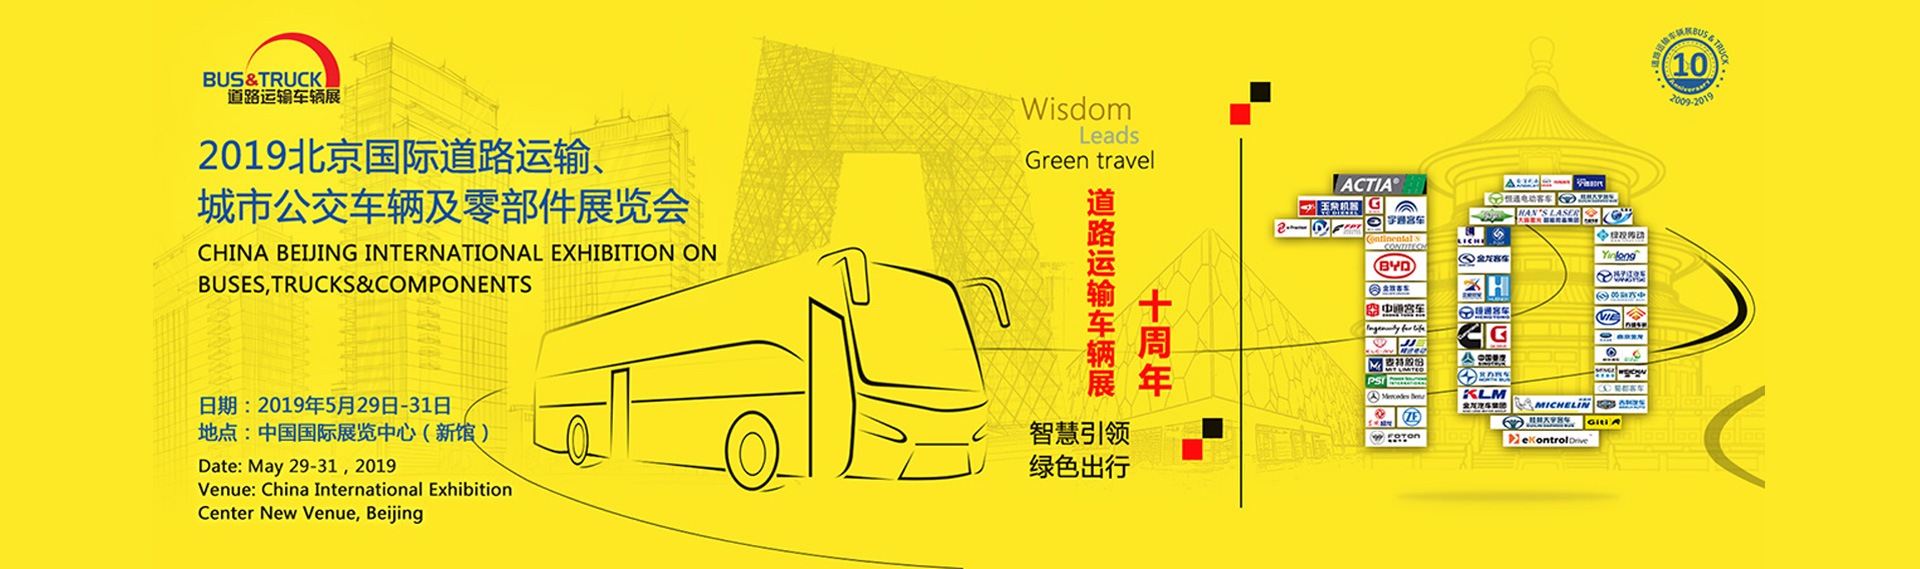 远程汽车展台 2019北京国际道路运输、城市公交车辆及零配件展览会